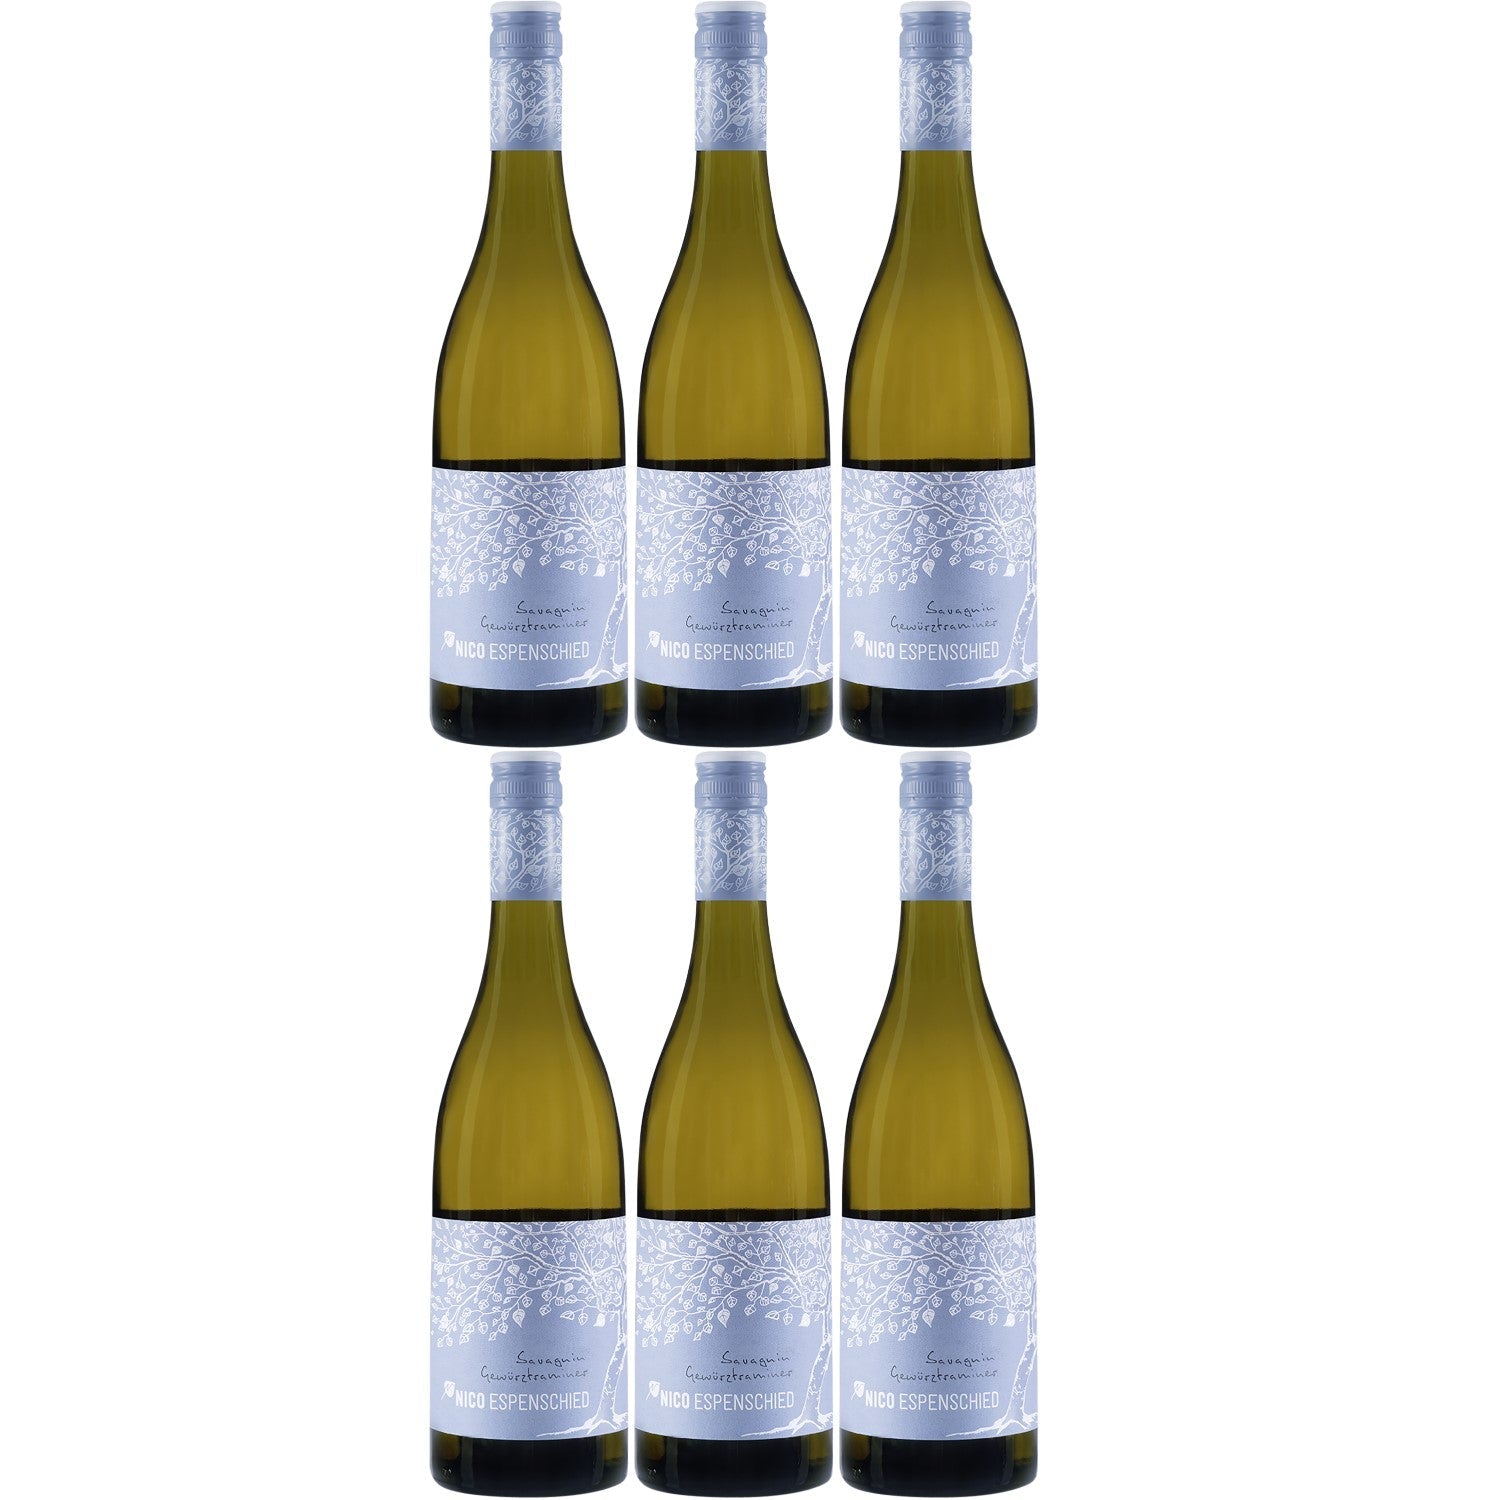 Nico Espenschied Roter Traminer Hautnah Orange Wine Weißwein veganer Wein trocken (6 x 0.75l) - Versanel -